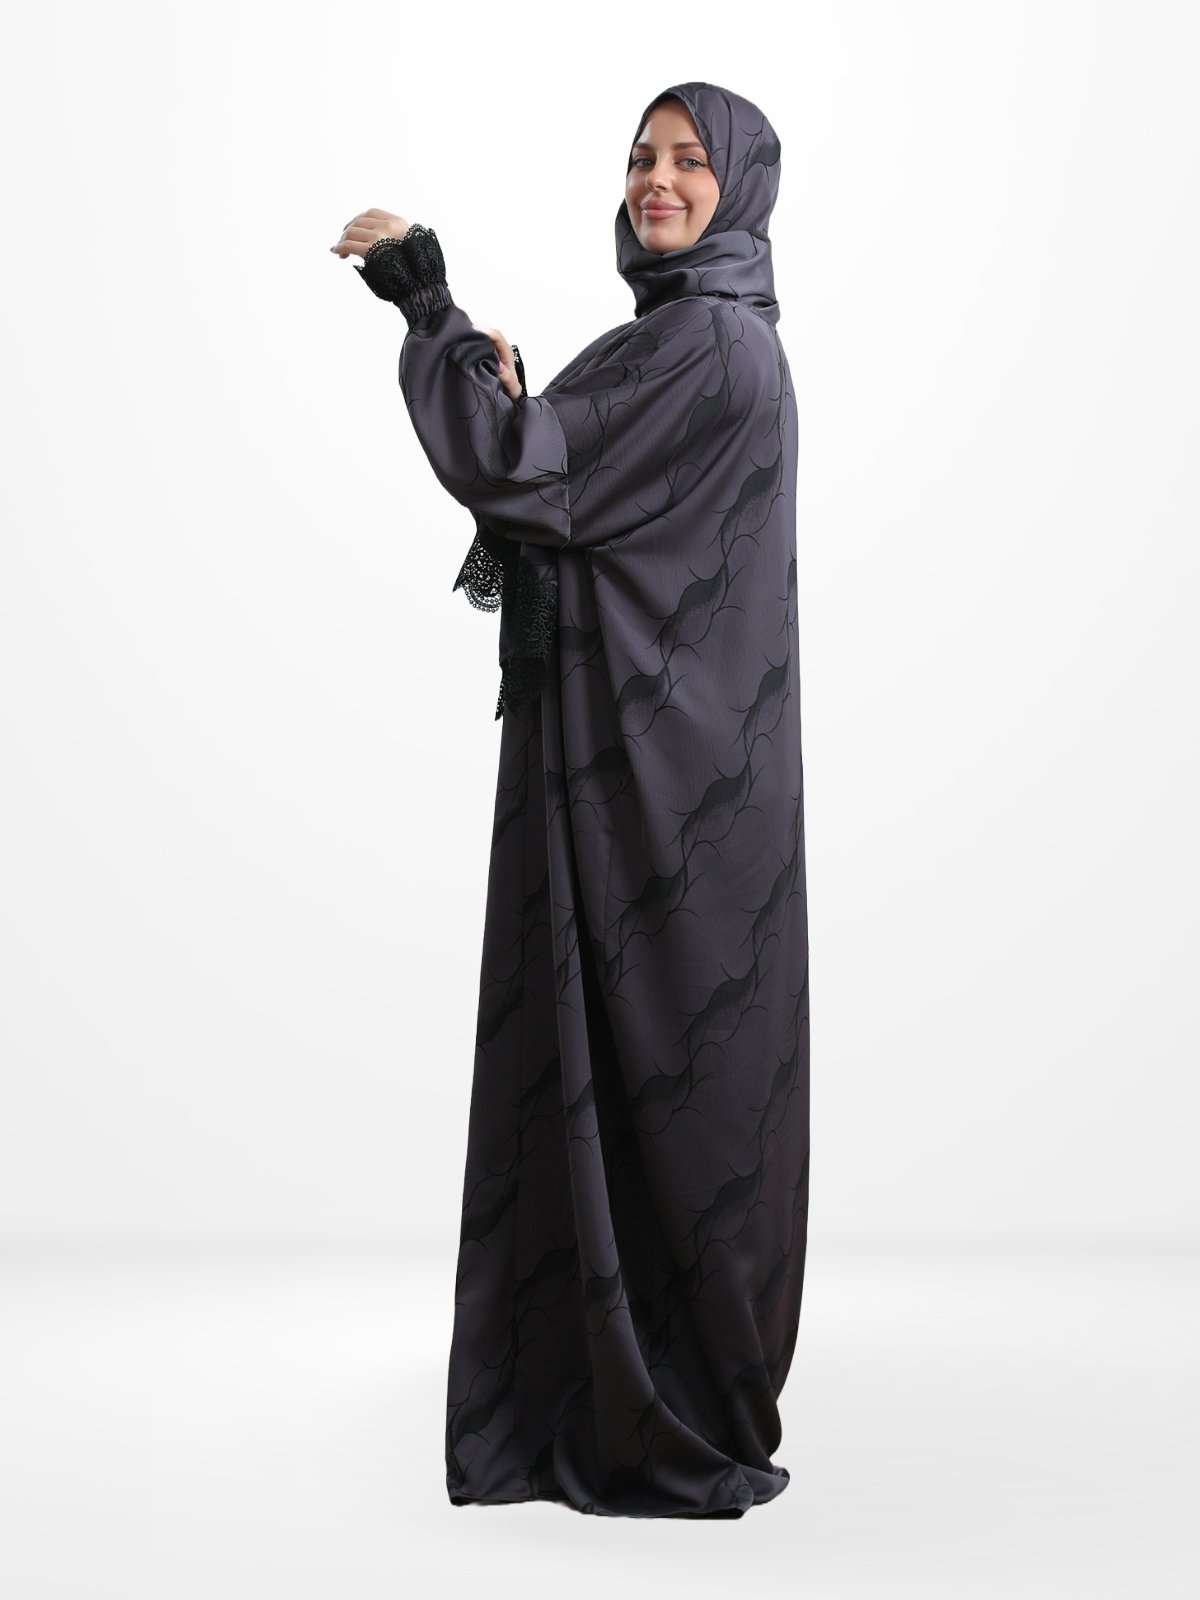 One - Piece Prayer Dress & Abaya with attached Hijab - Satin - Modest Essence